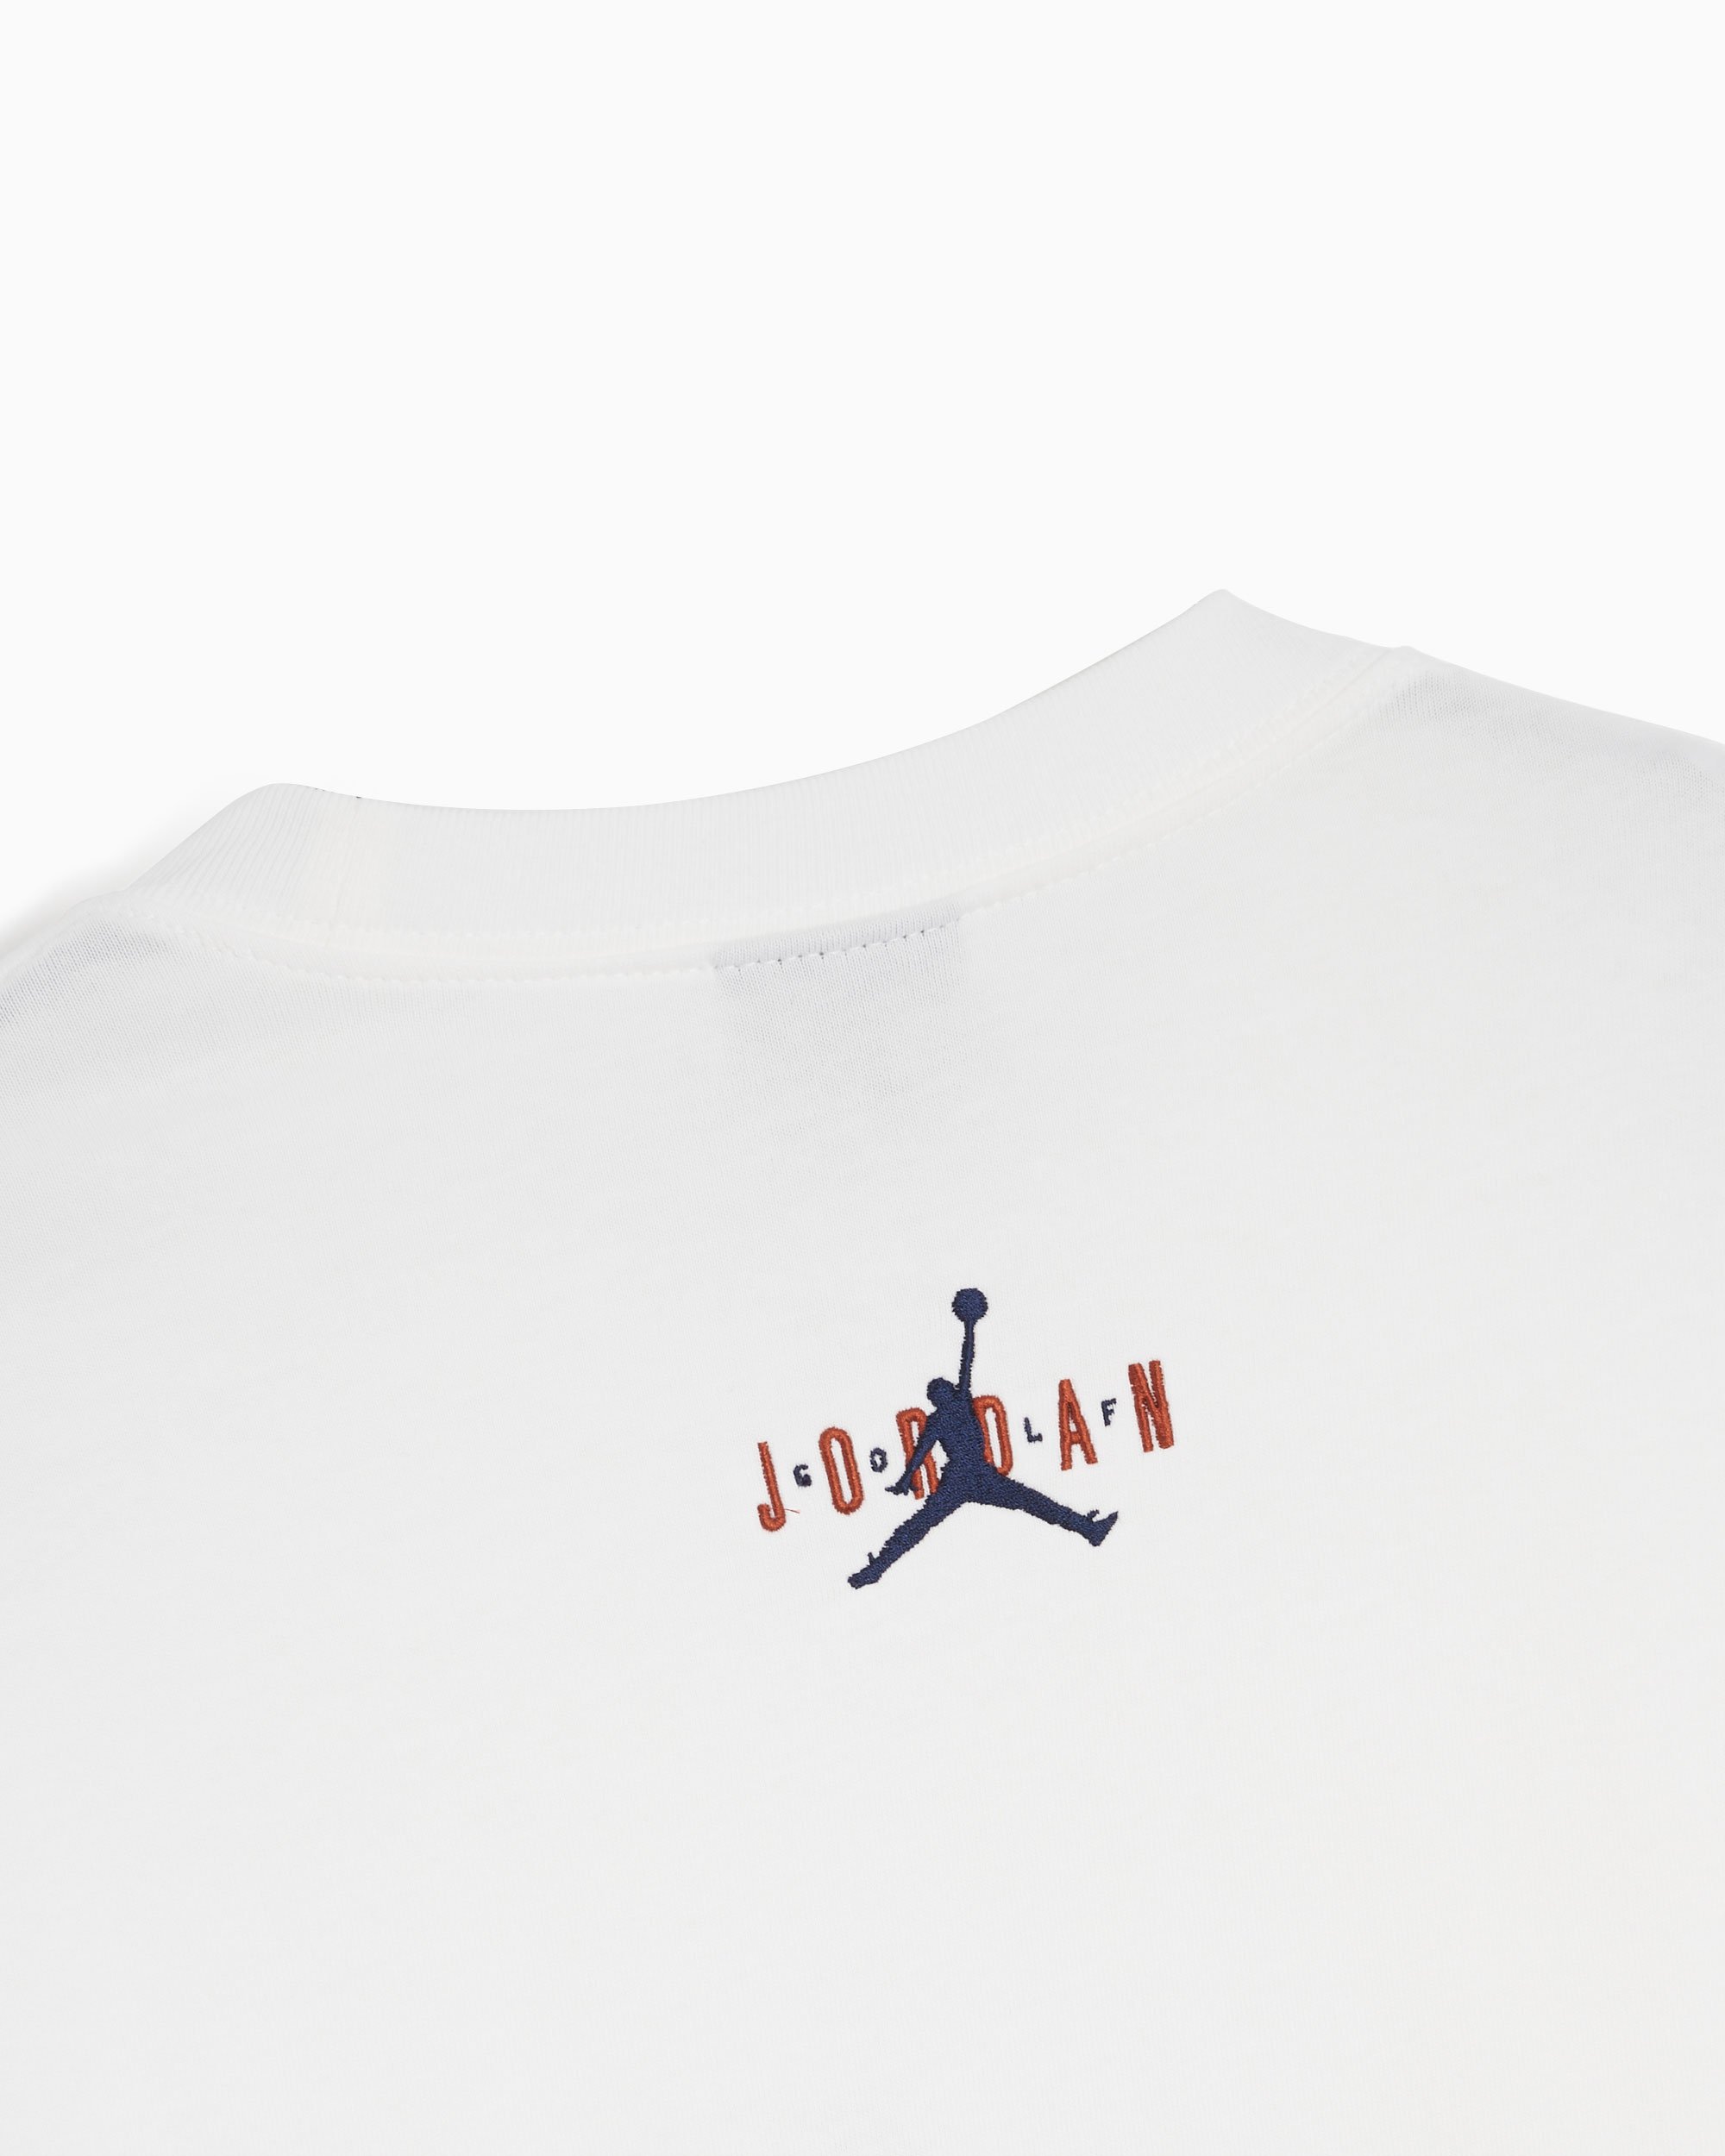 Jordan x Eastside Golf Men's T-Shirt White DV1890-100| Buy Online